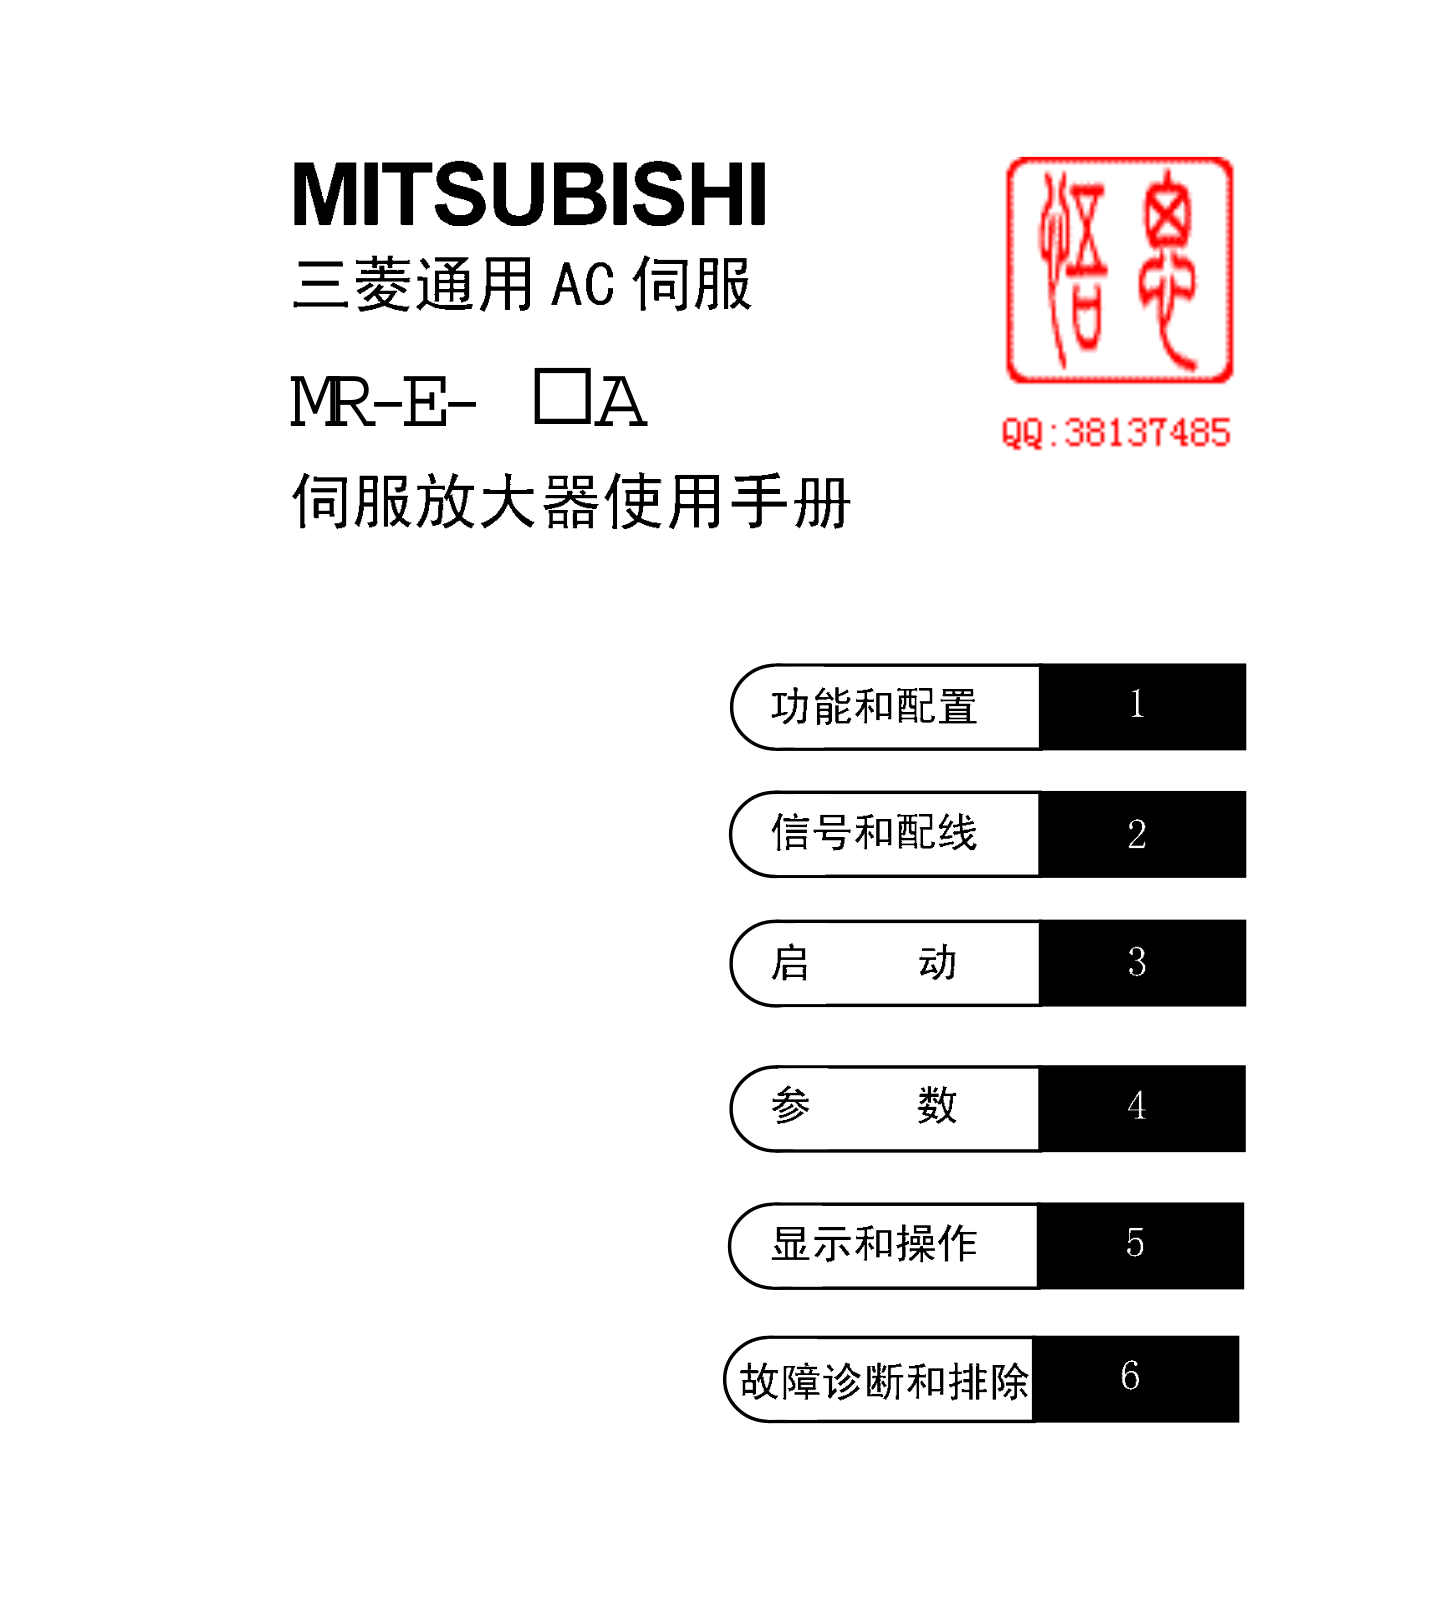 MITSUBISHI MR-E- A User Manual